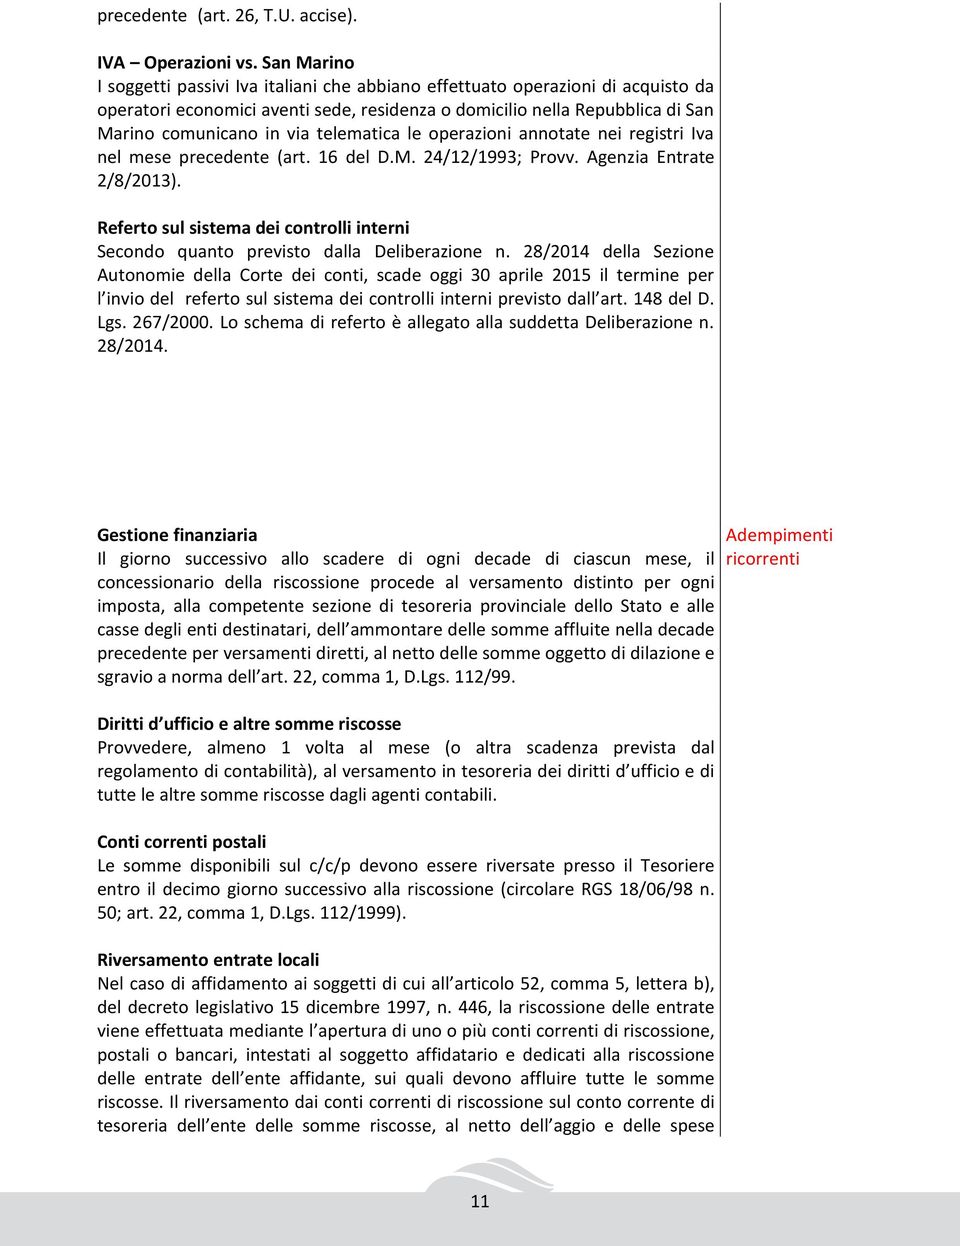 telematica le operazioni annotate nei registri Iva nel mese precedente (art. 16 del D.M. 24/12/1993; Provv. Agenzia Entrate 2/8/2013).